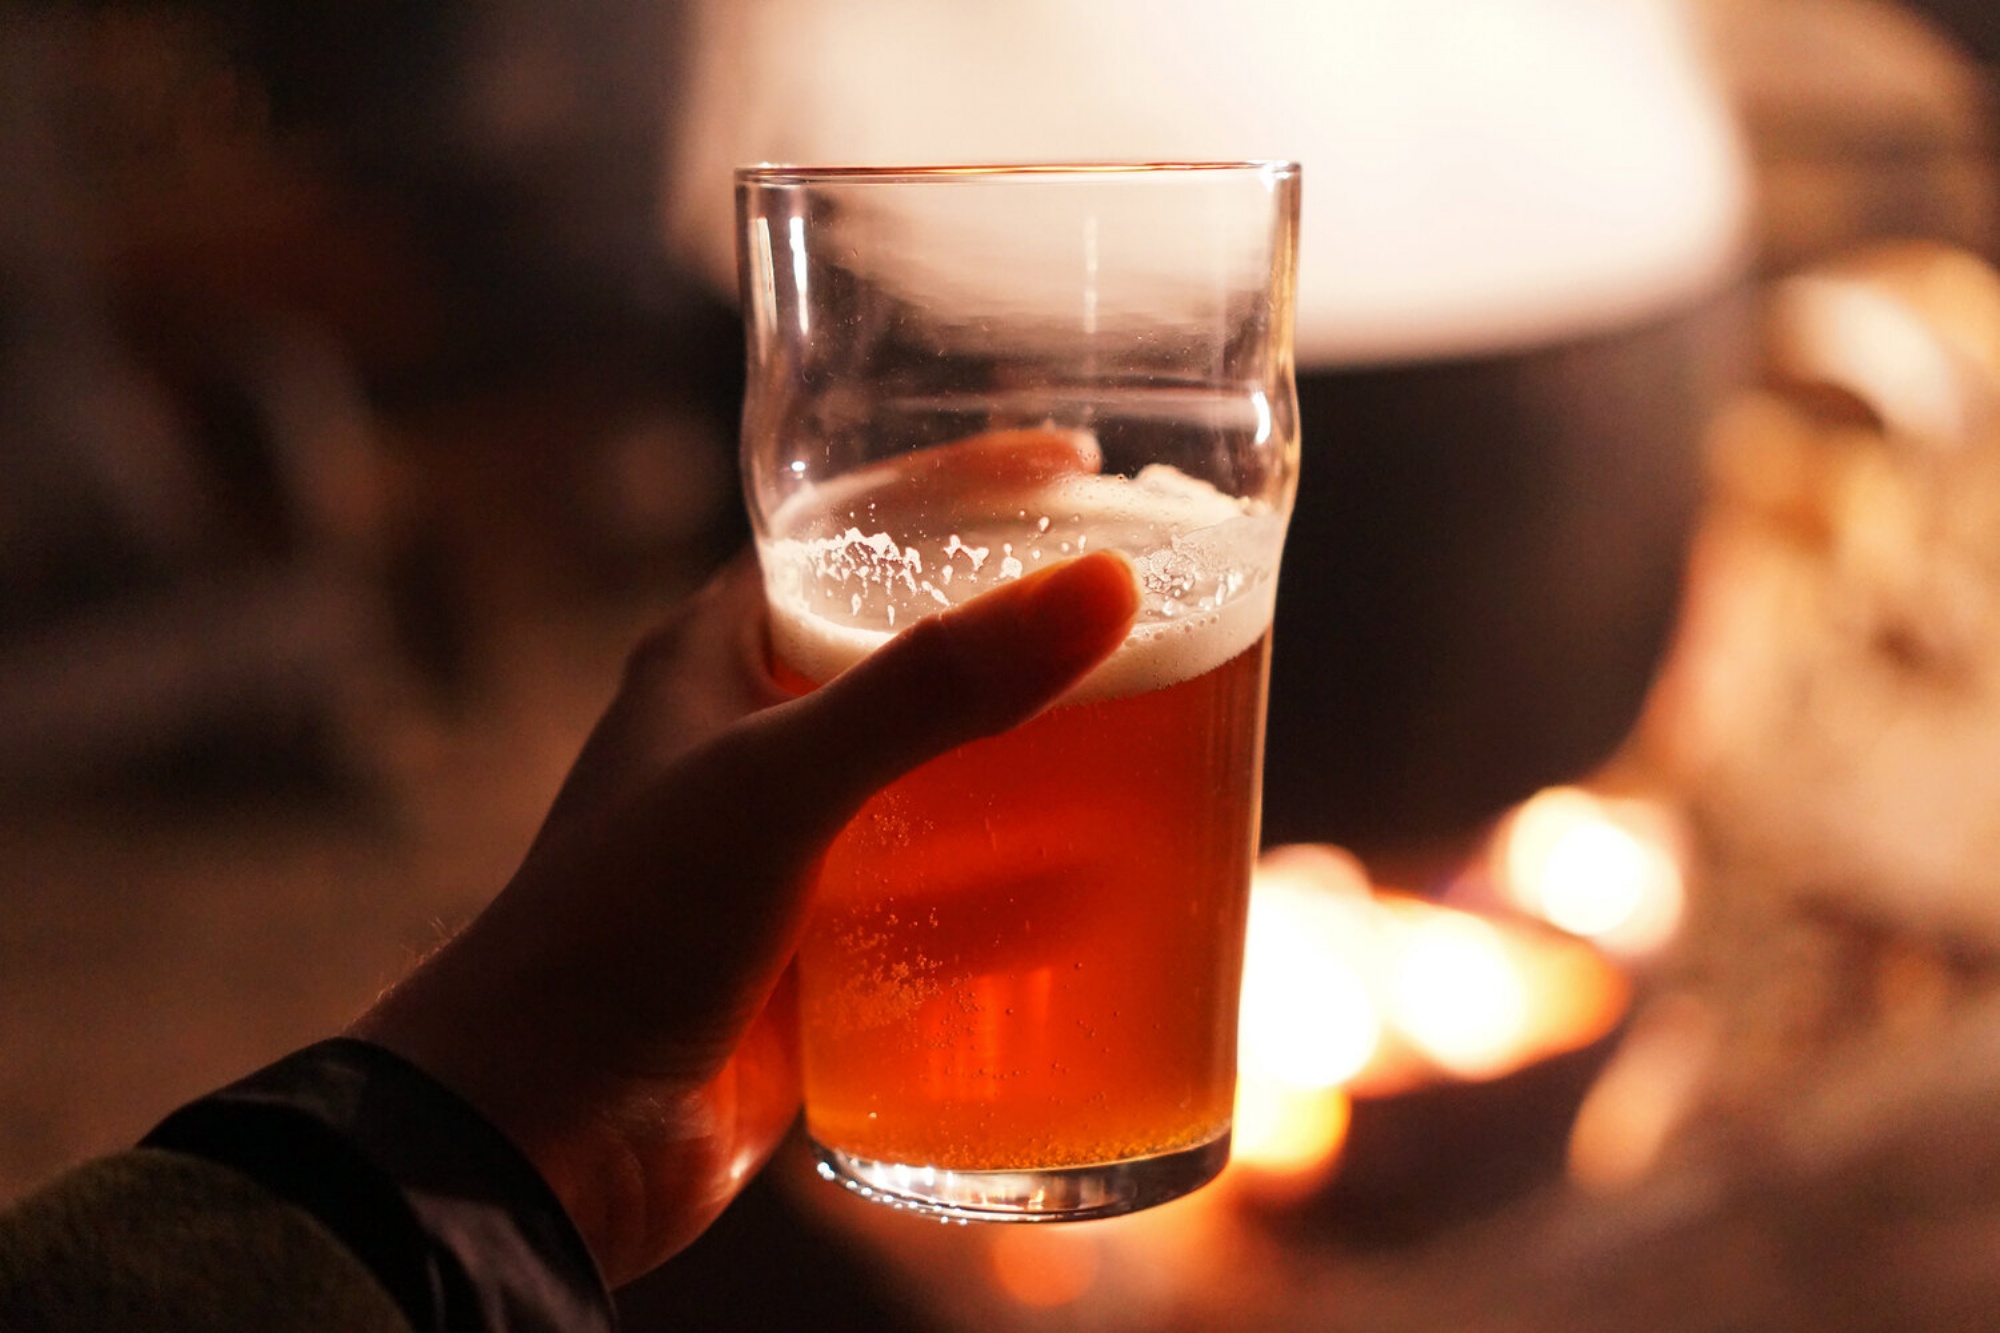 A taste of Voss kveik beer with juniperPhoto: Claire Bullen